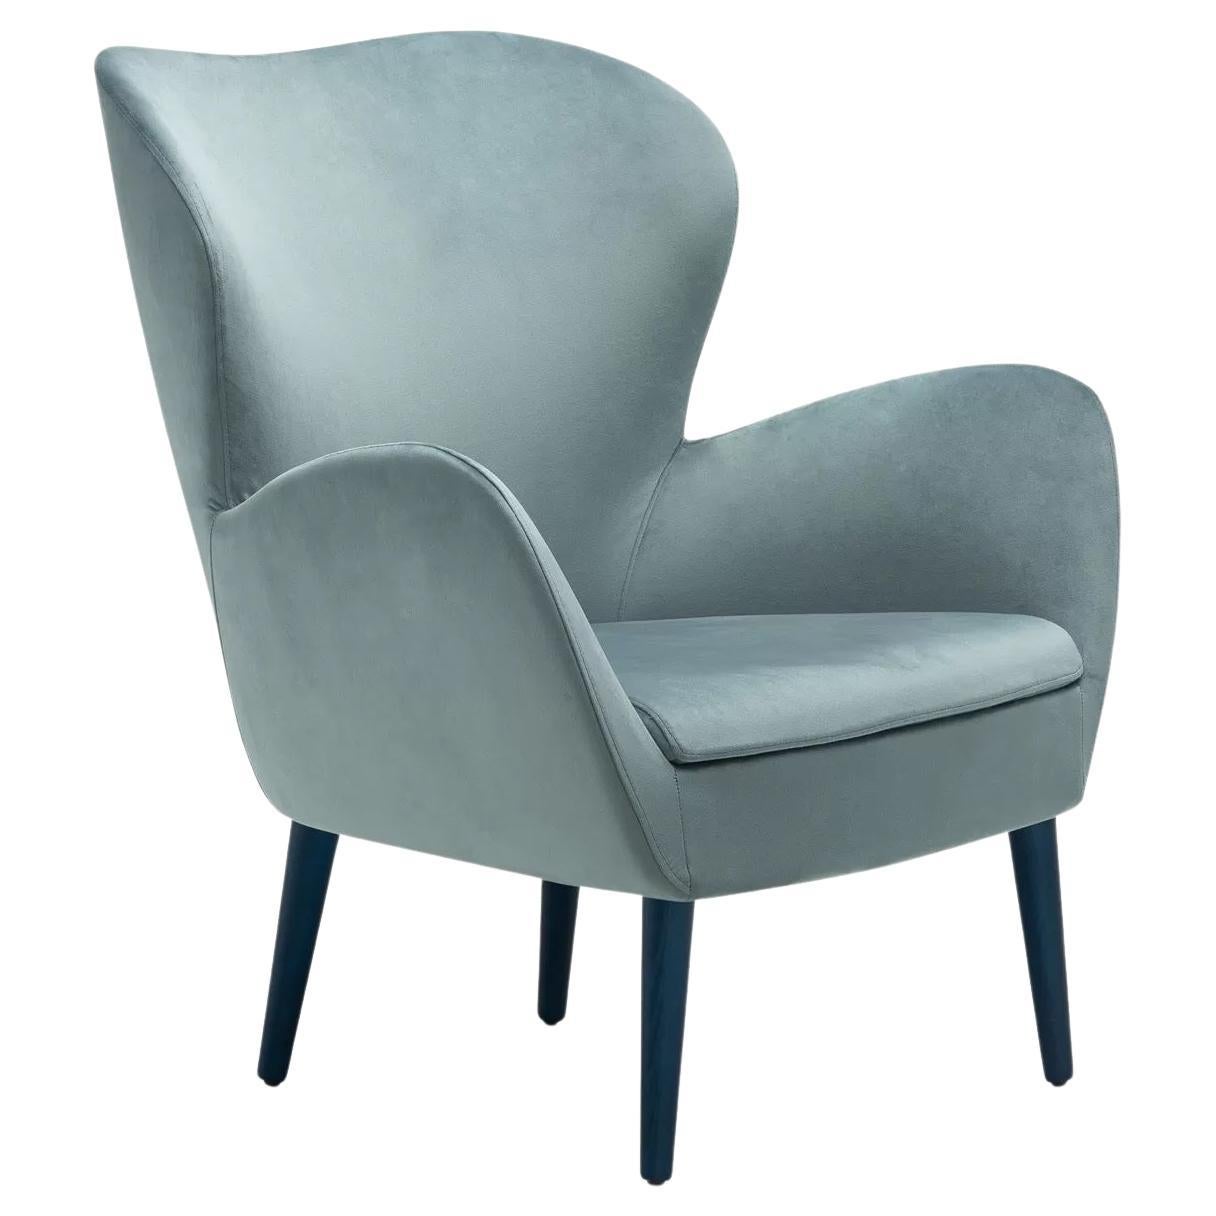 Vom Stil der 60er Jahre beeinflusster Sessel. Das Design ist eine Hommage an die umhüllenden und abgerundeten Volumen, die für den Stil dieses Jahrzehnts charakteristisch sind.
Polstermöbel: Samt
Beine: Zylinderförmige Beine aus